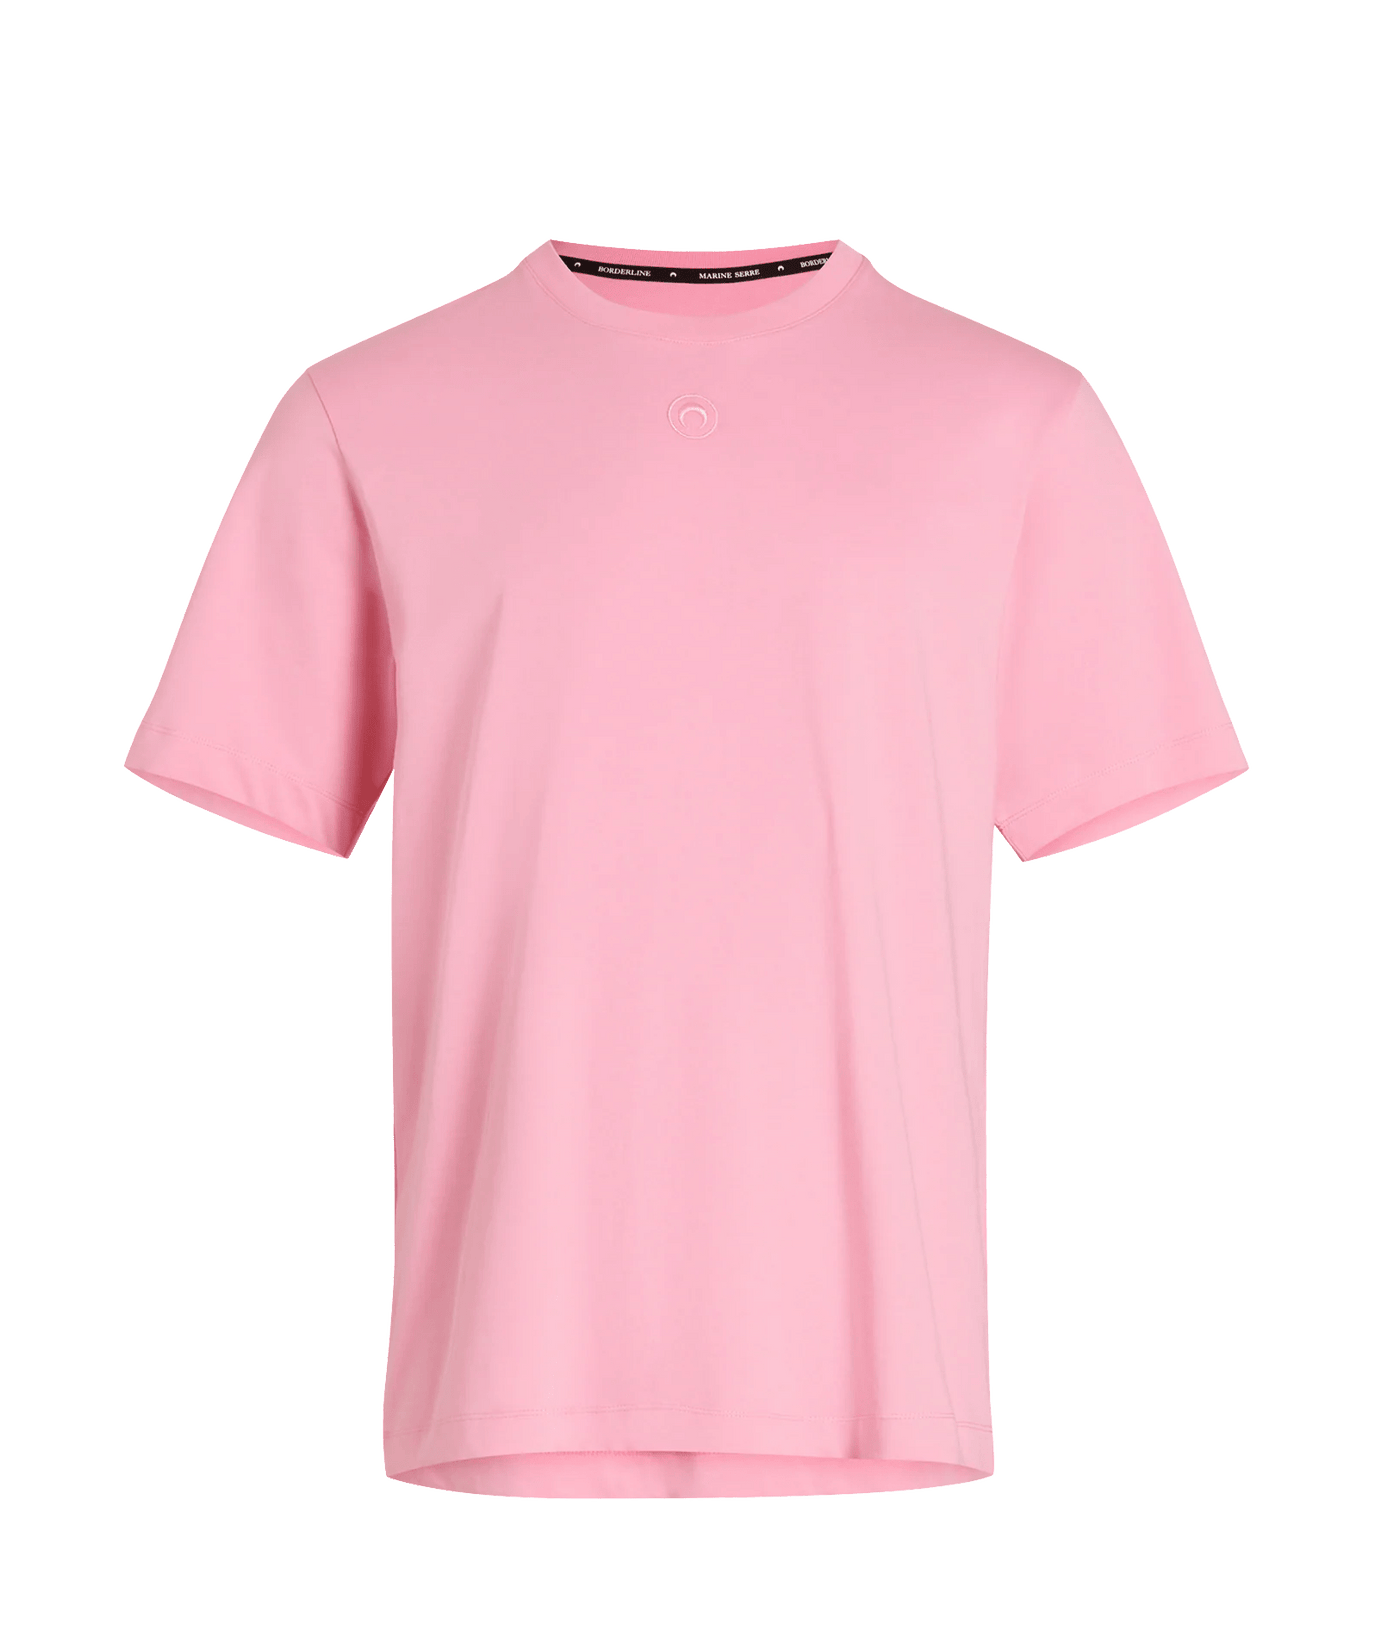 Marine Serre - T Shirt pink uni en coton biologique - Lothaire